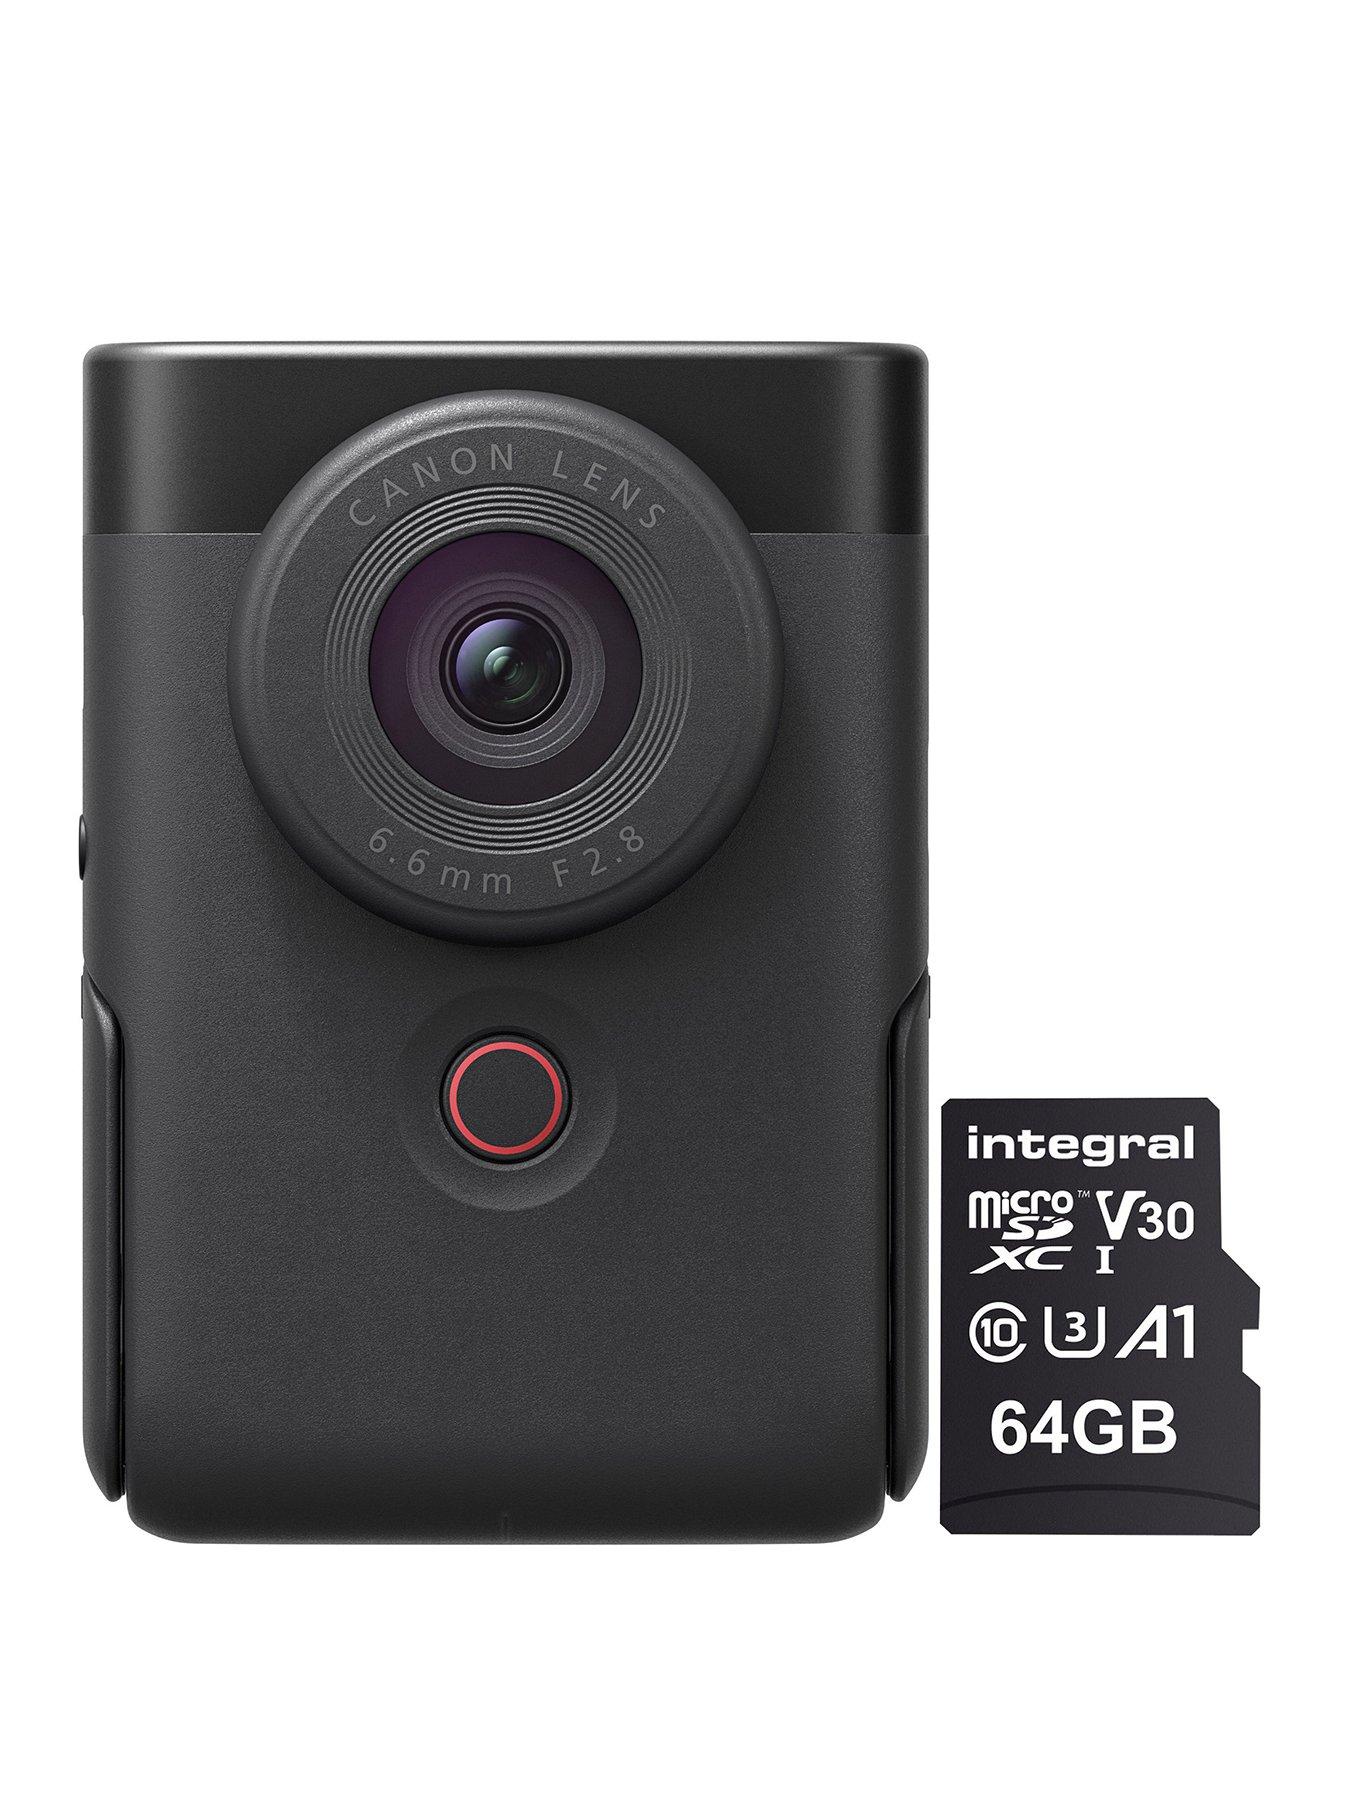 Creative Labs Dual-Mode PC-Cam 350 (Webcam & Digital Camera)